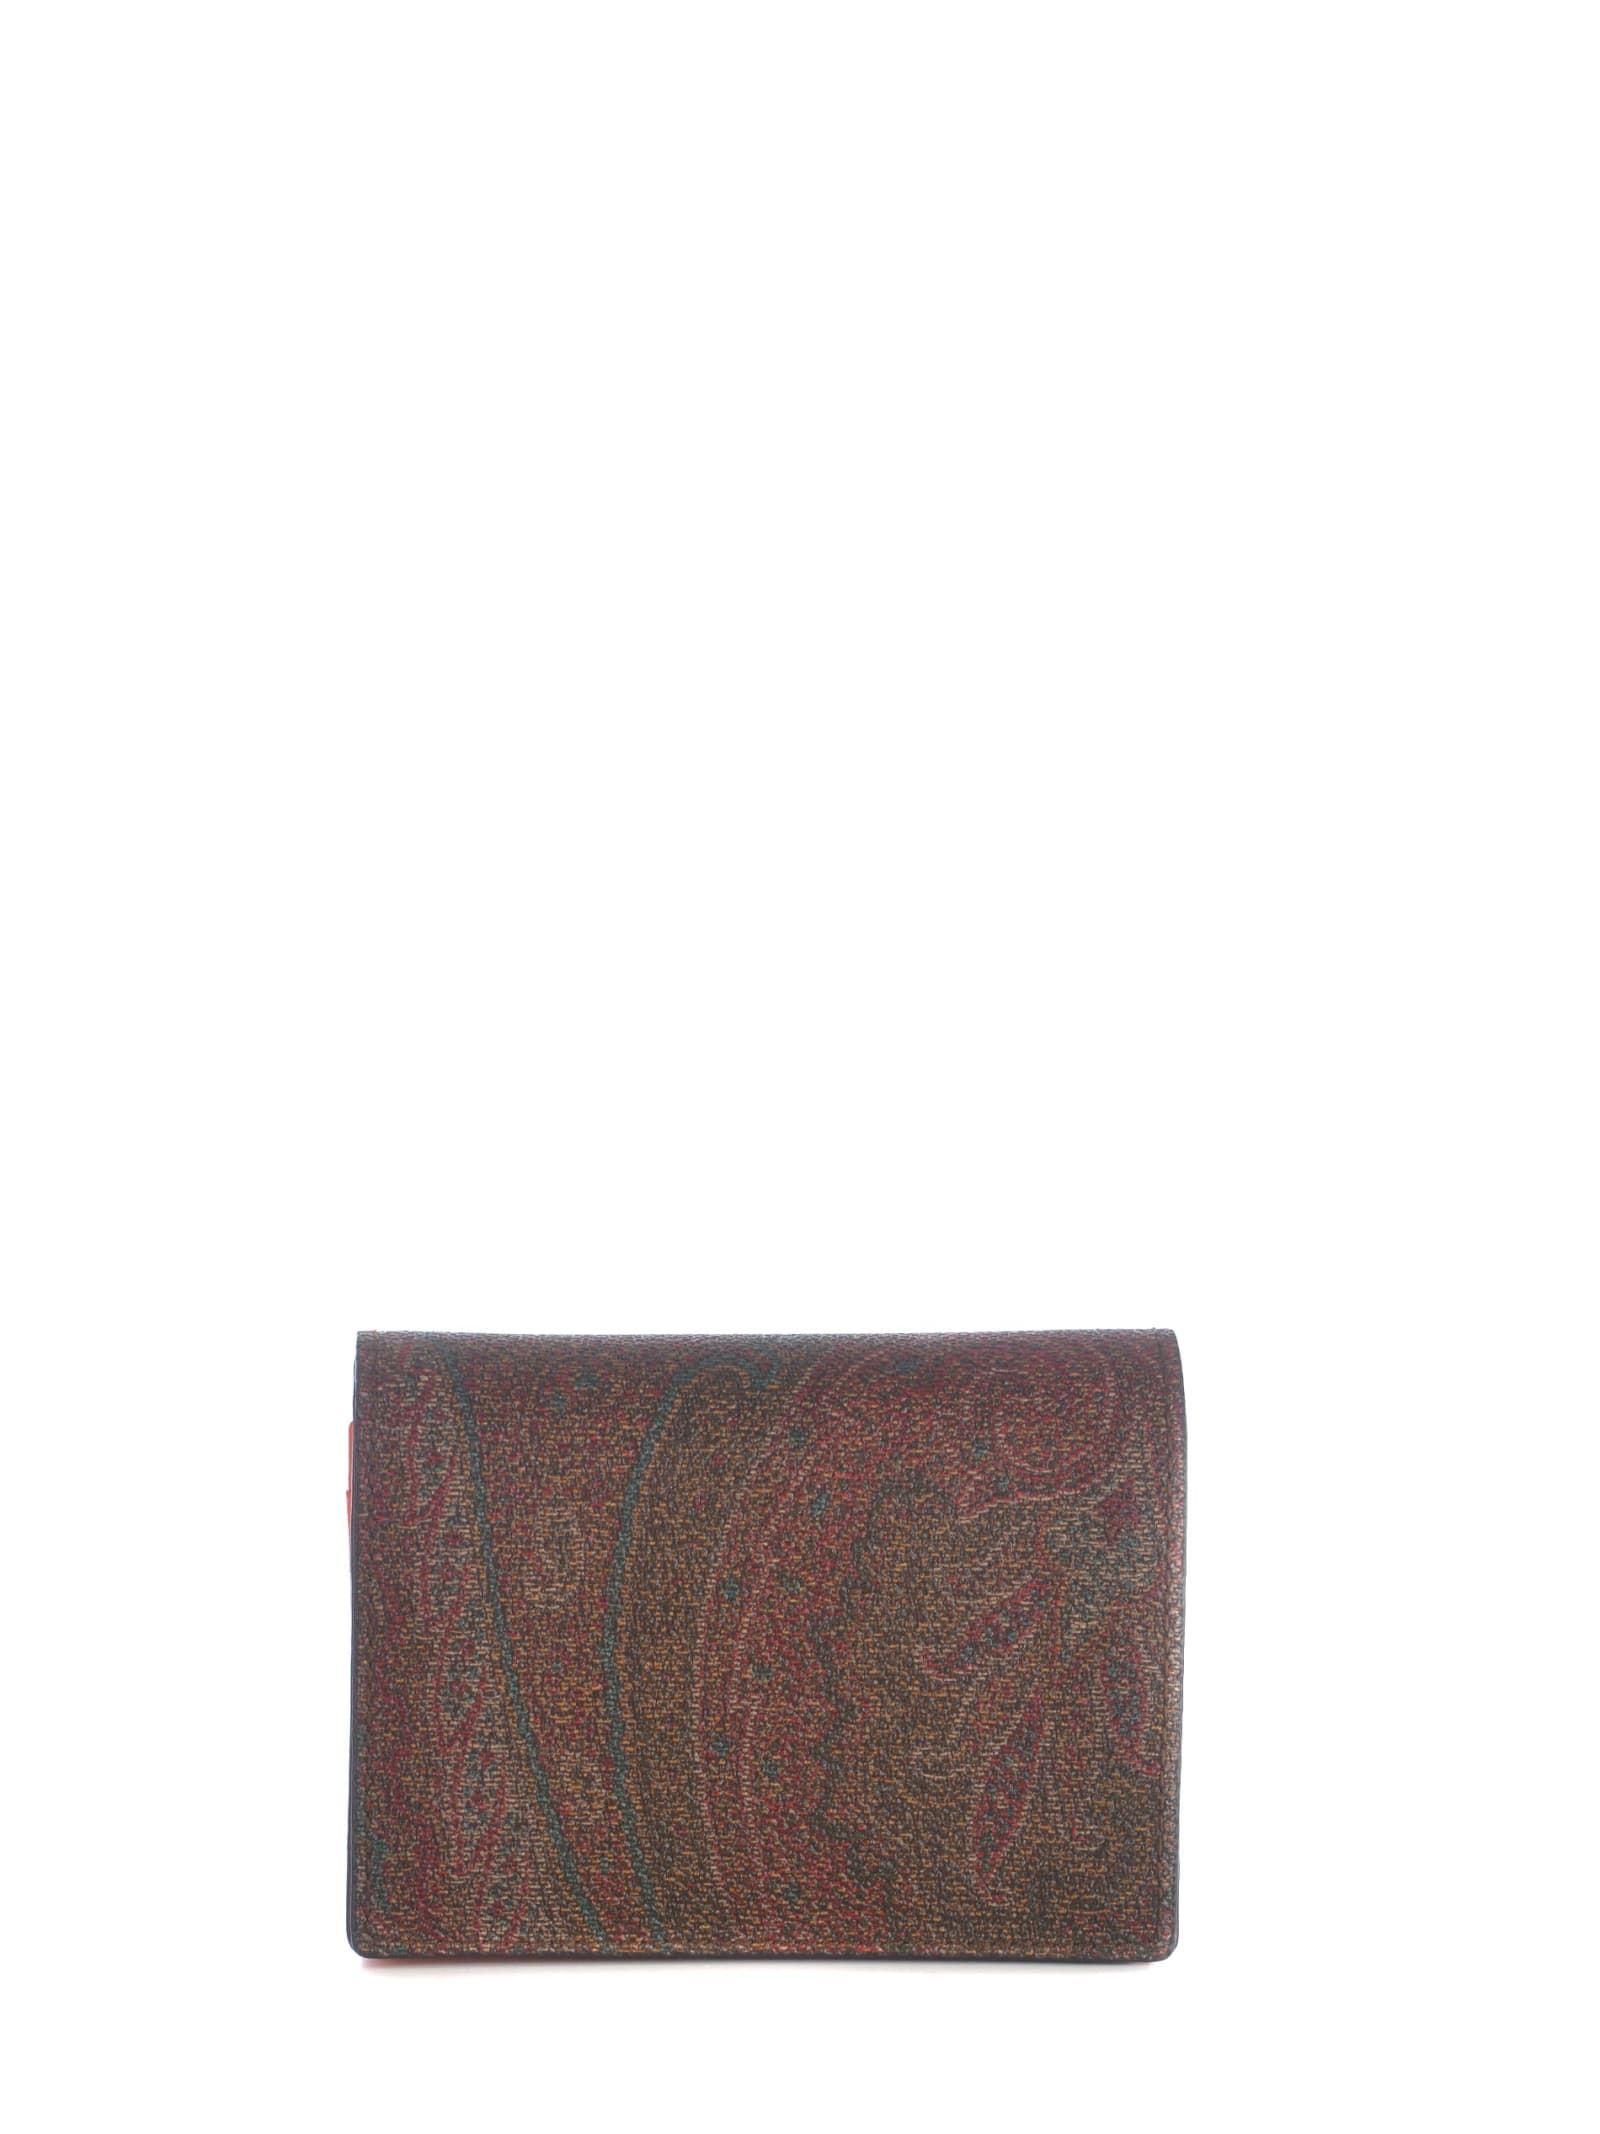 Wallet Etro multicolor In Paisley Cotton